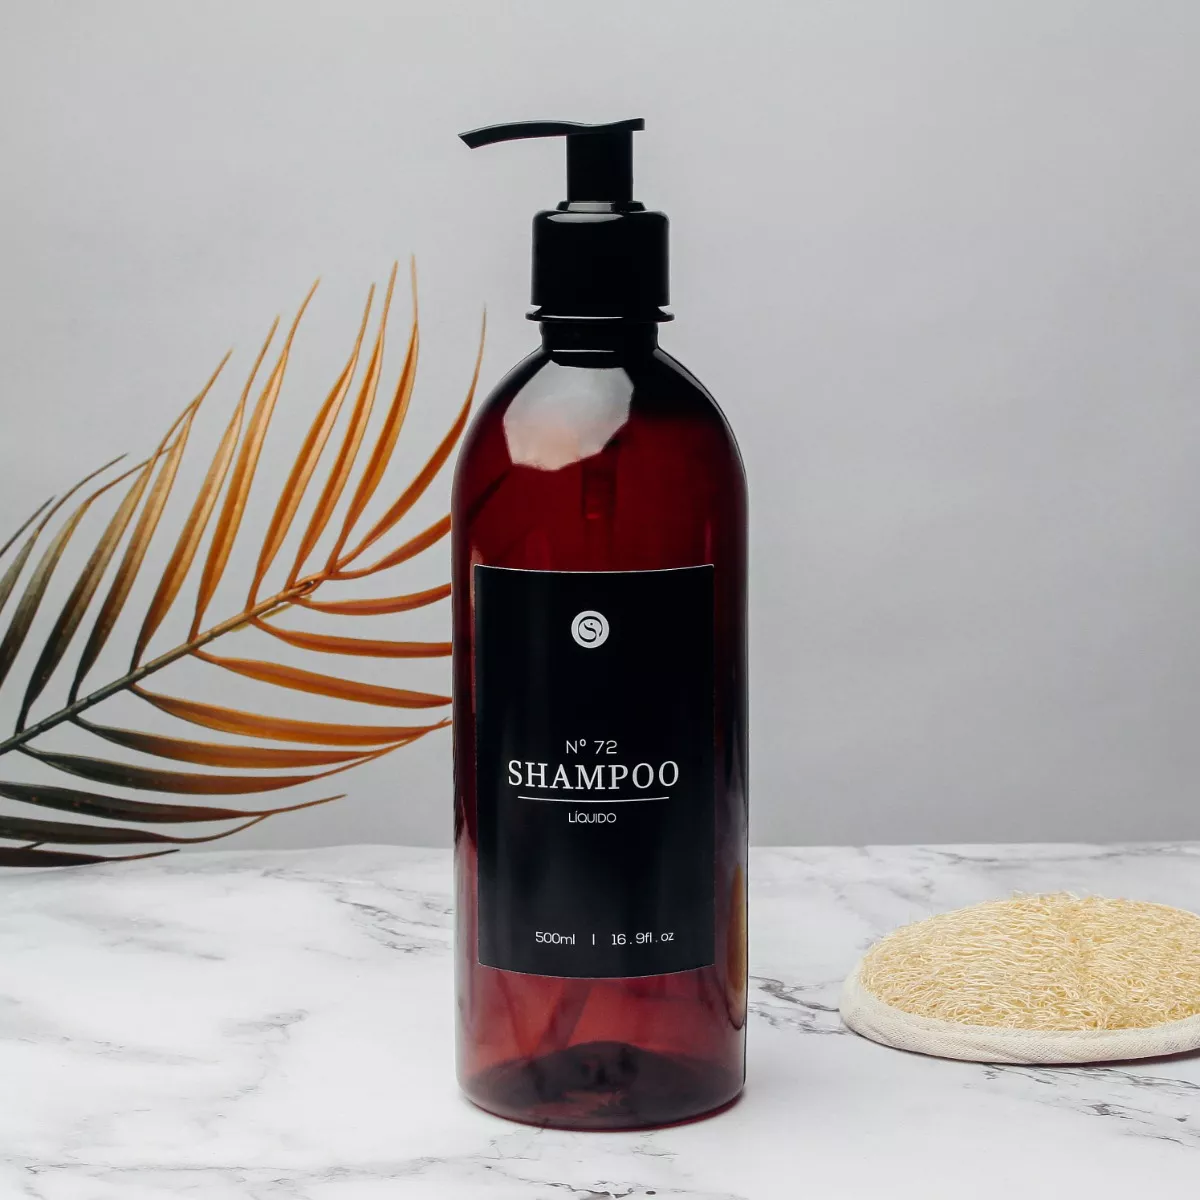 Terceira imagem para pesquisa de dispenser shampoo